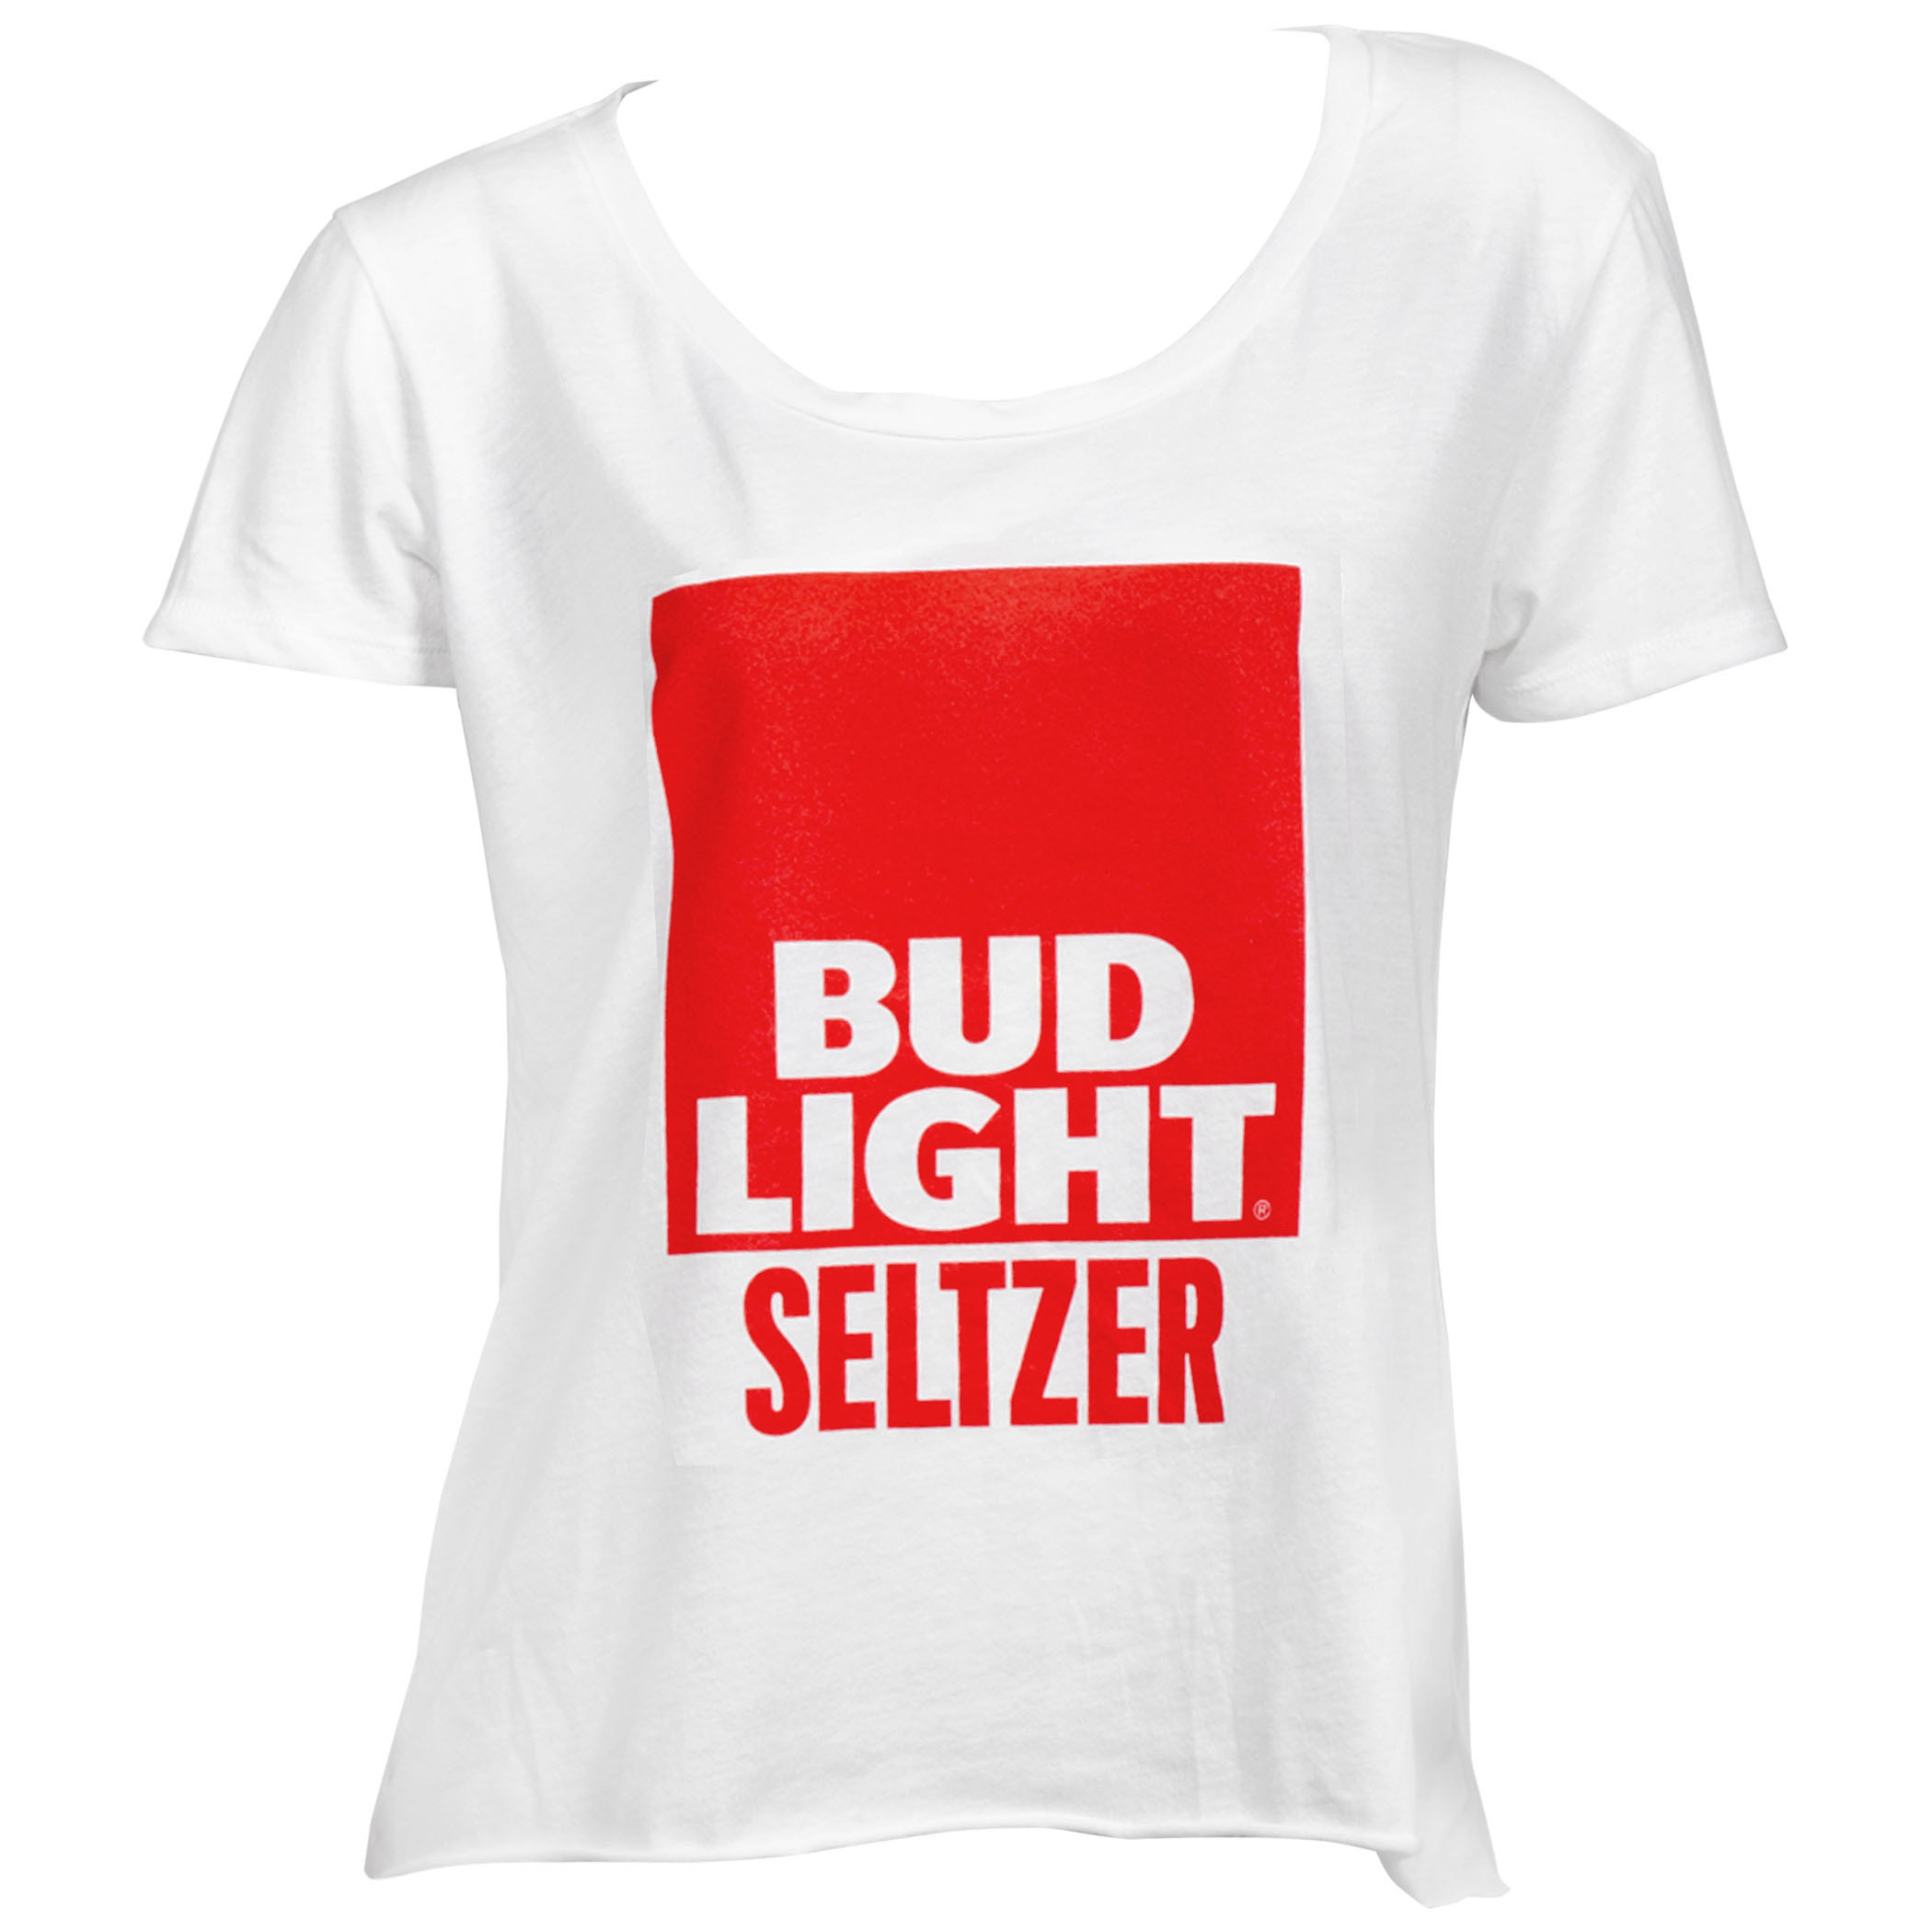 Bud Light Seltzer Women's Crop Top T-Shirt